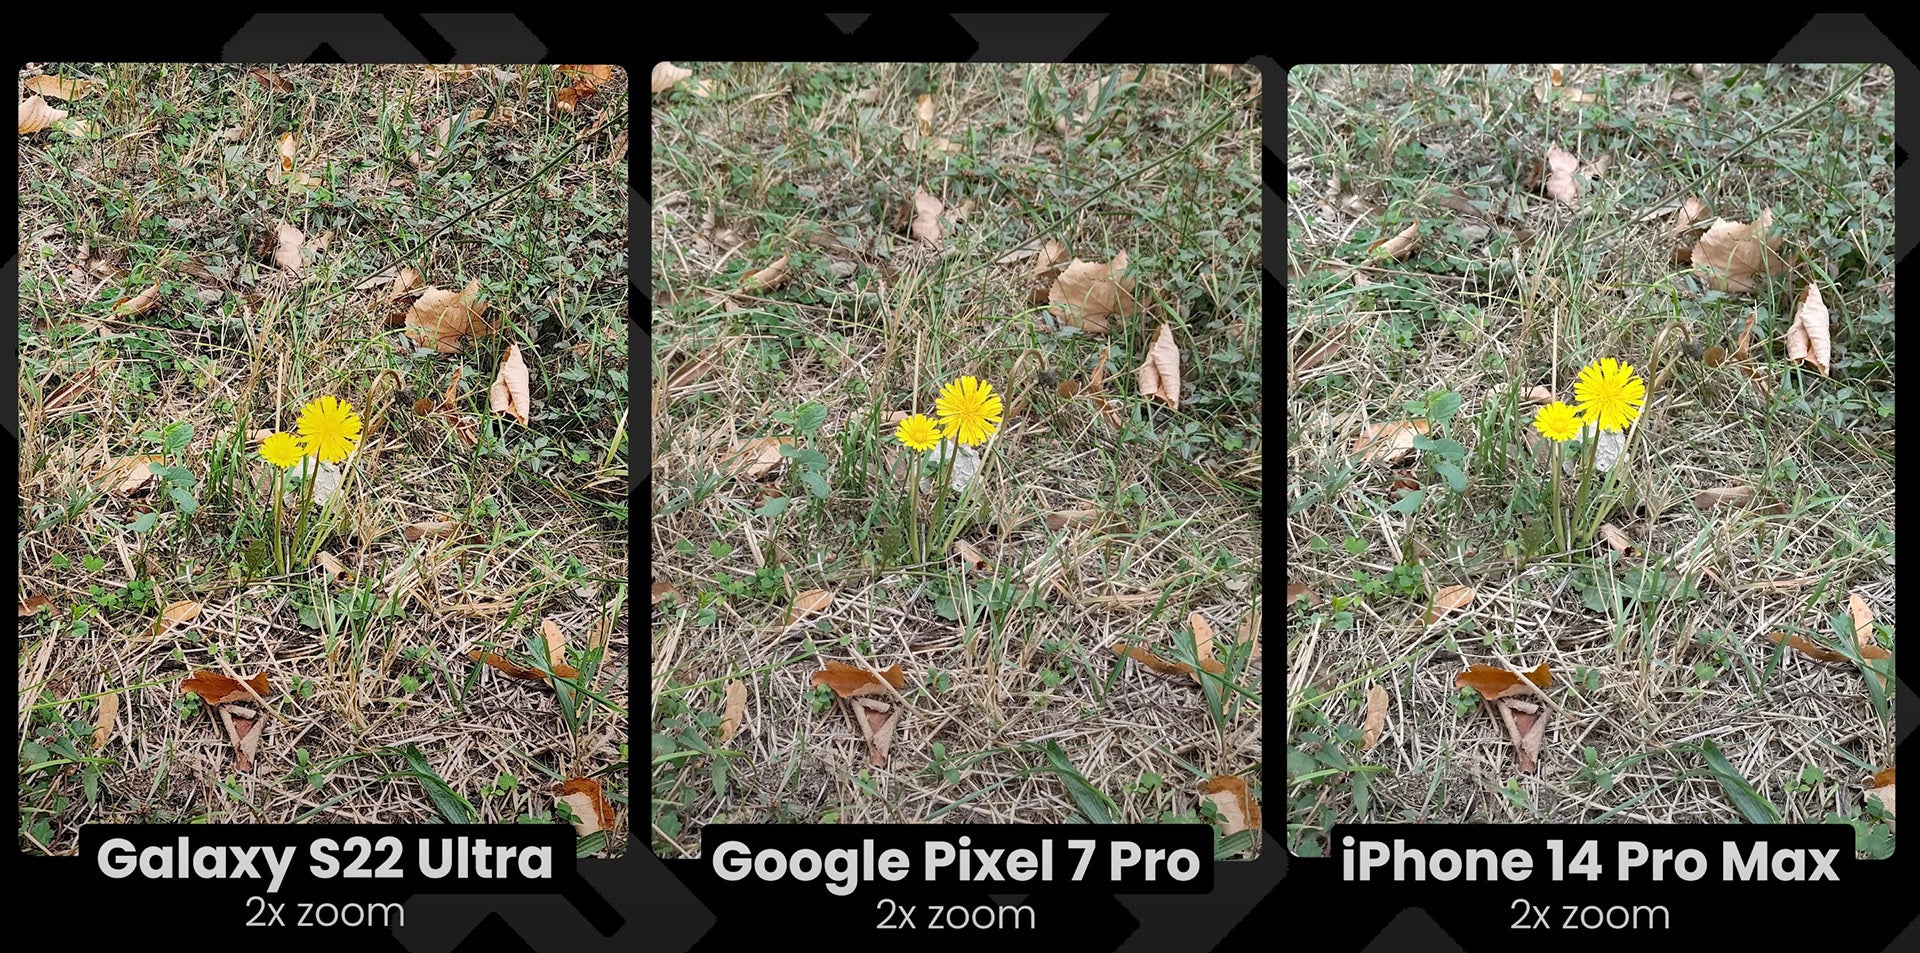 (Credito immagine - PhoneArena) Nonostante abbia il sensore con la risoluzione più alta, a 2X il Galaxy S22 Ultra cattura meno dettagli rispetto a iPhone 14 Pro e Pixel 7 Pro - Samsung e Xiaomi sorprendono, la fotocamera 2X di Apple è molto buona